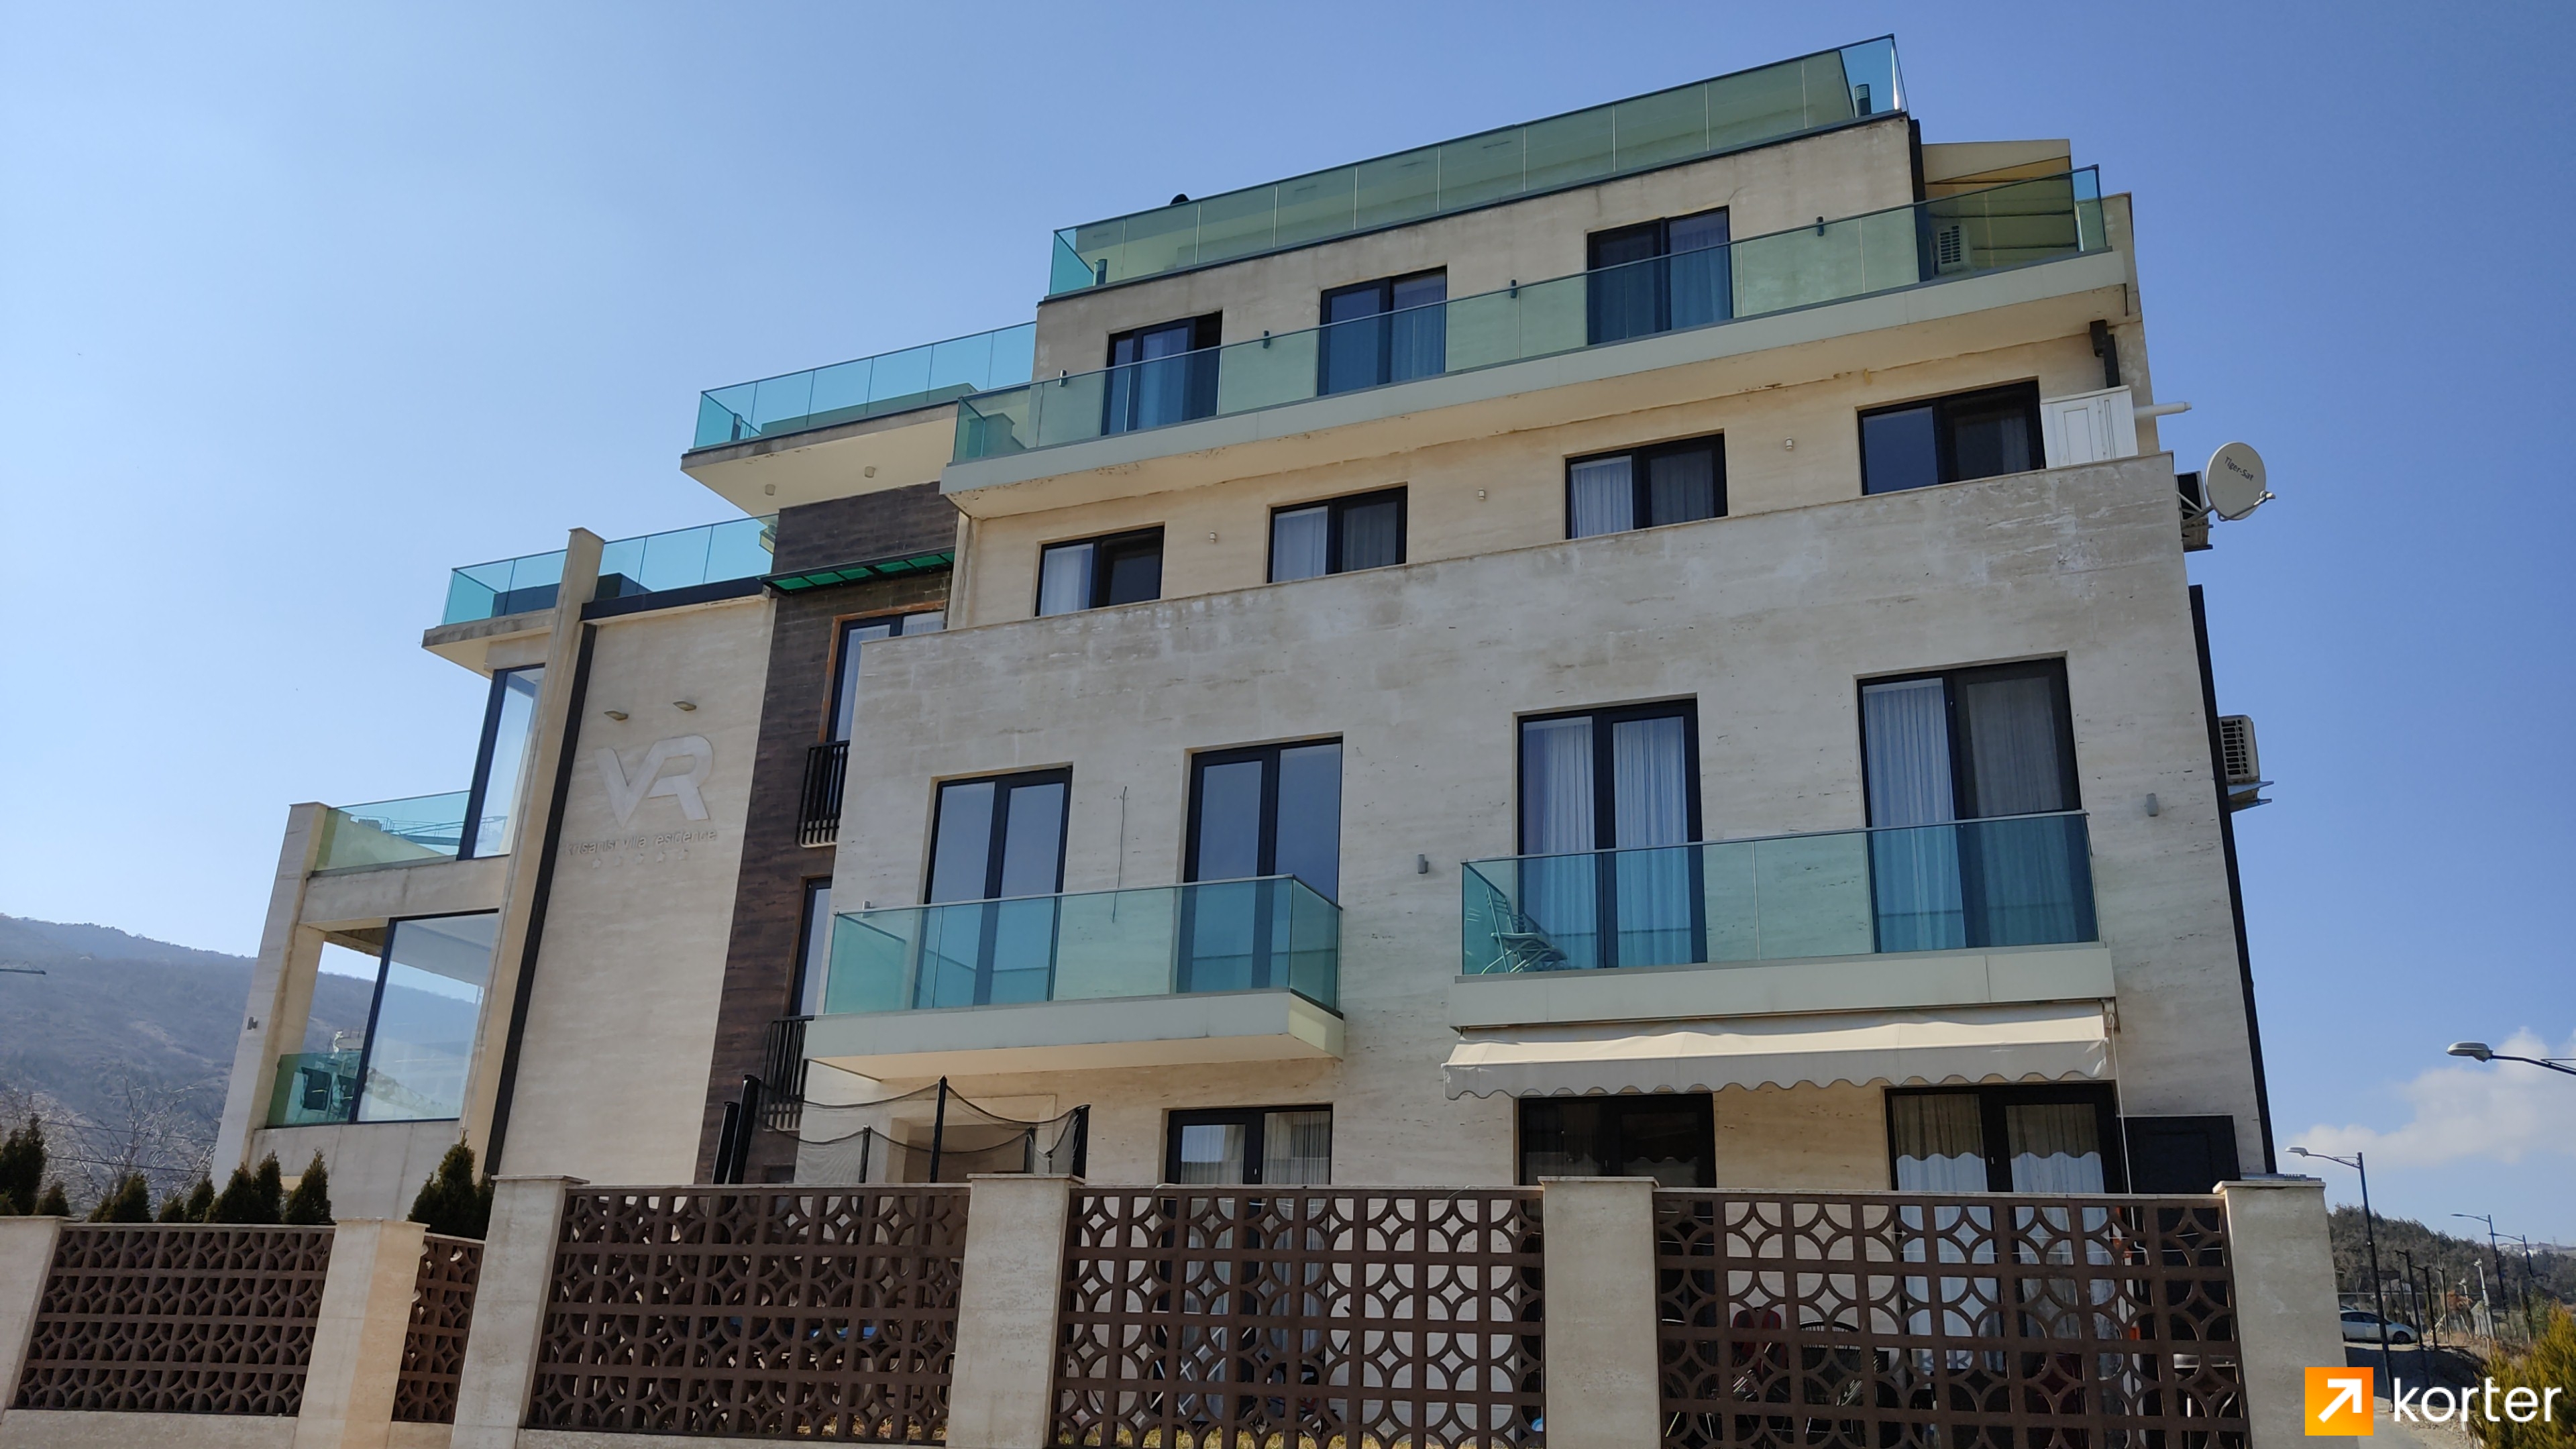 Construction progress Krtsanisi Resort Residence - Angle 22, February 2022